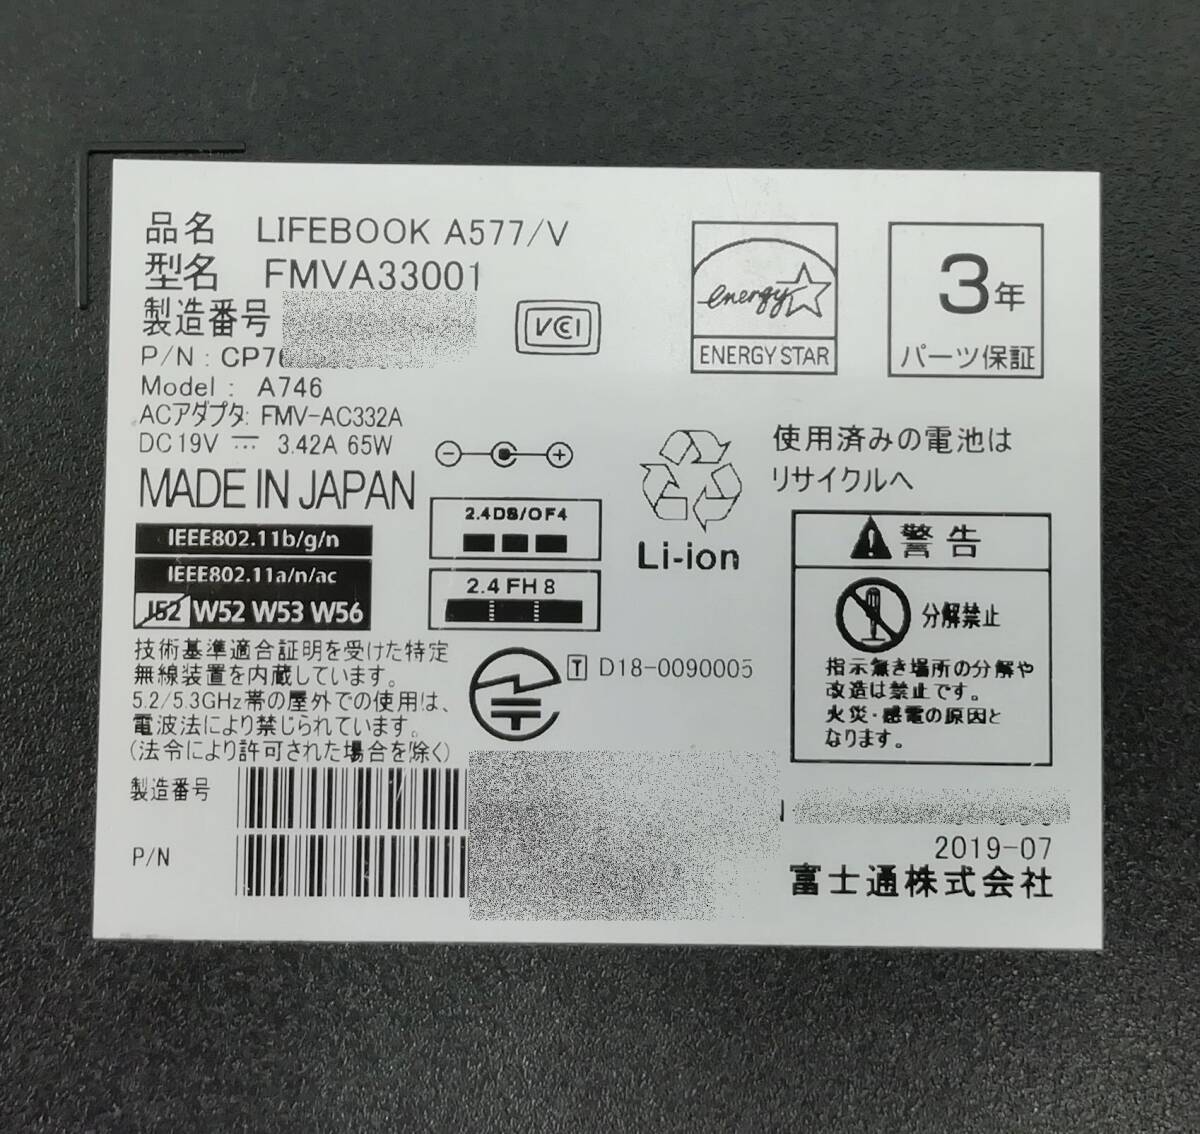 [ перевод иметь ]FUJITSU LIFEBOOK A577/V Core i5 7300U память 8GB новый товар SSD 2.5 дюймовый 256GB Windows 10 Pro 64bit немедленная уплата возвращенный товар с гарантией [H24042901]